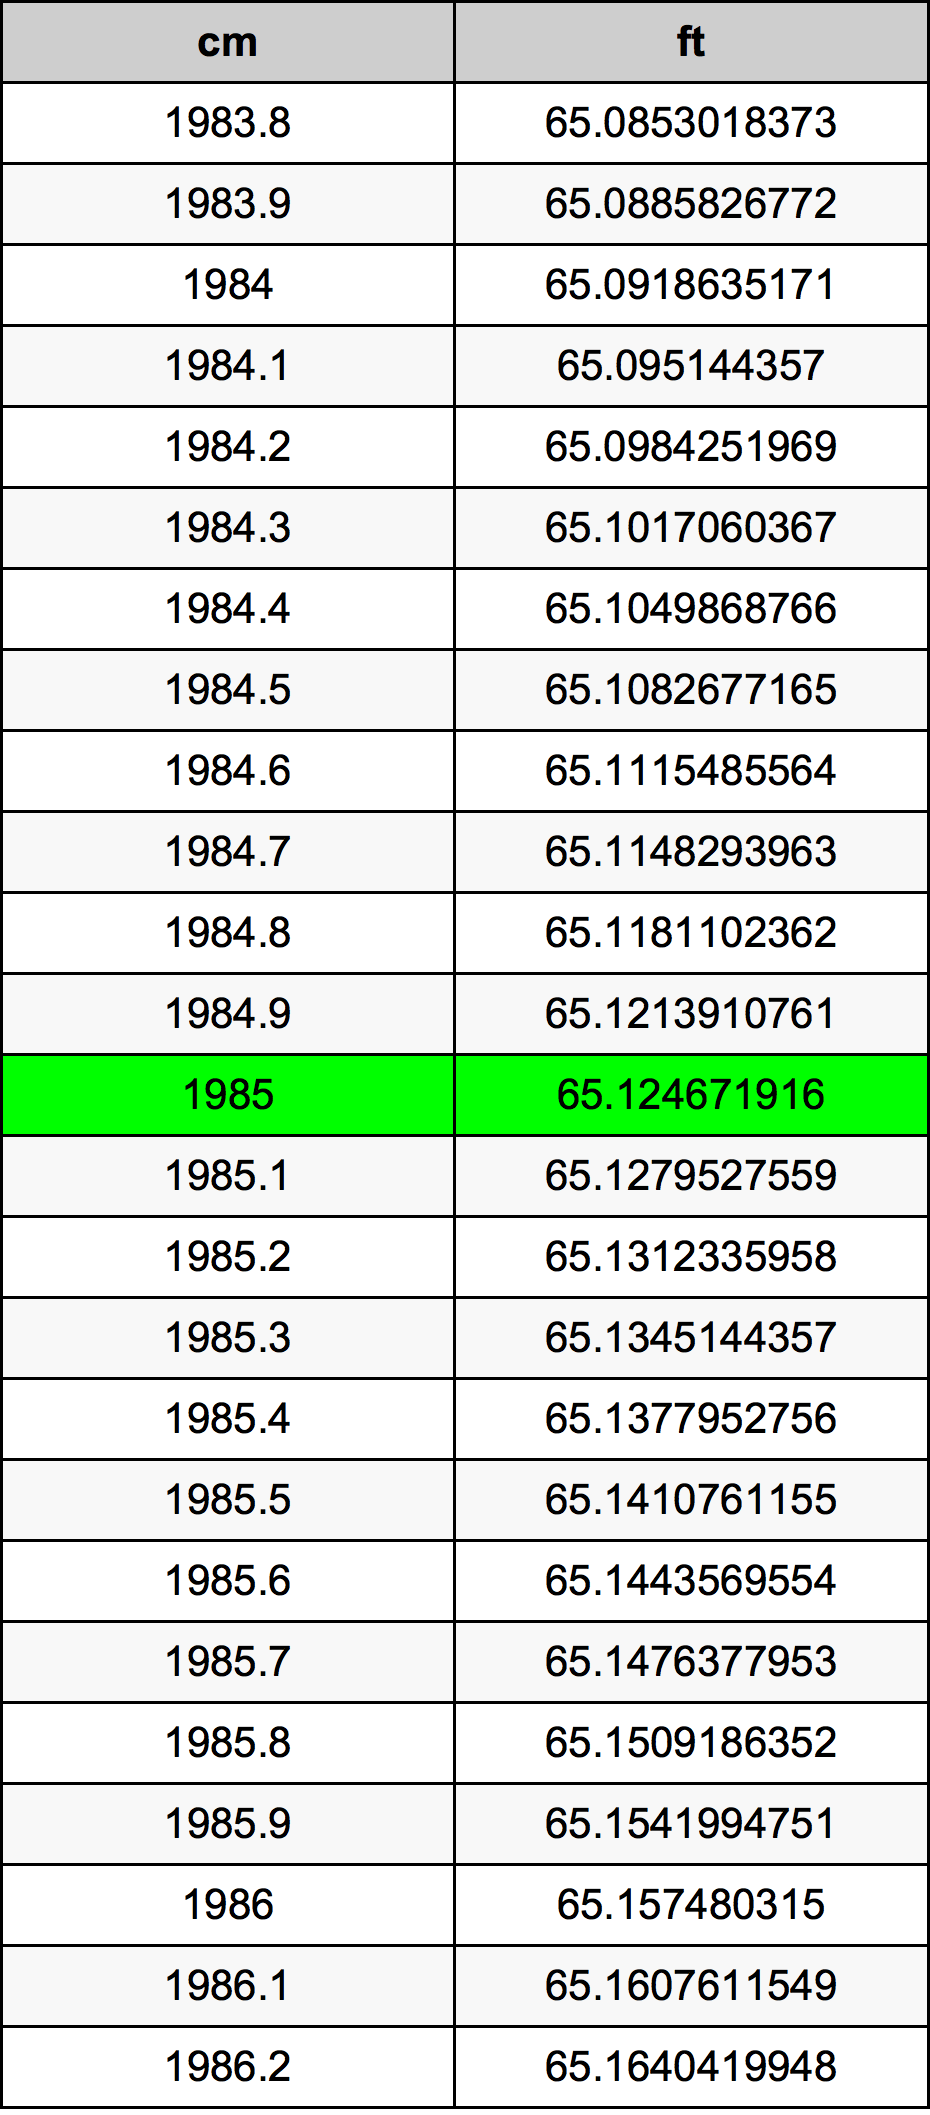 1985 Centimetro tabella di conversione